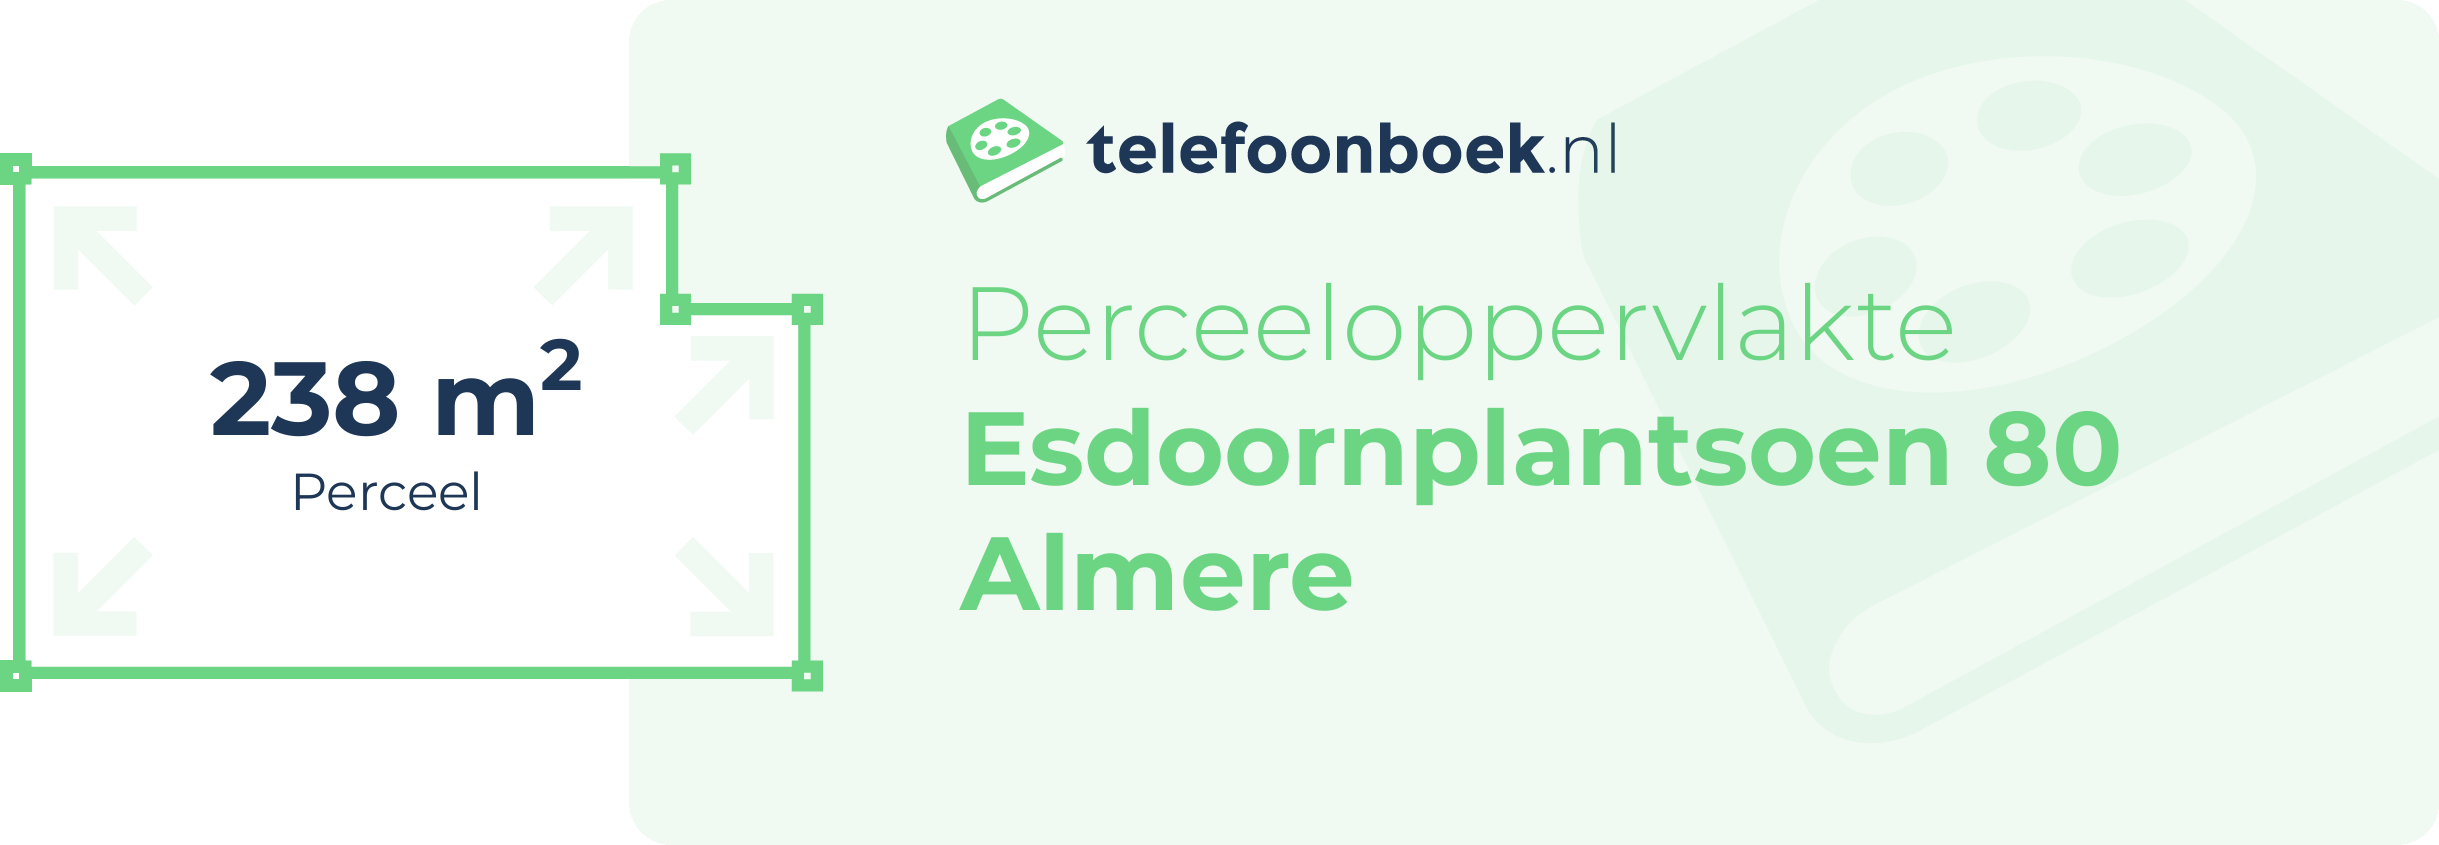 Perceeloppervlakte Esdoornplantsoen 80 Almere